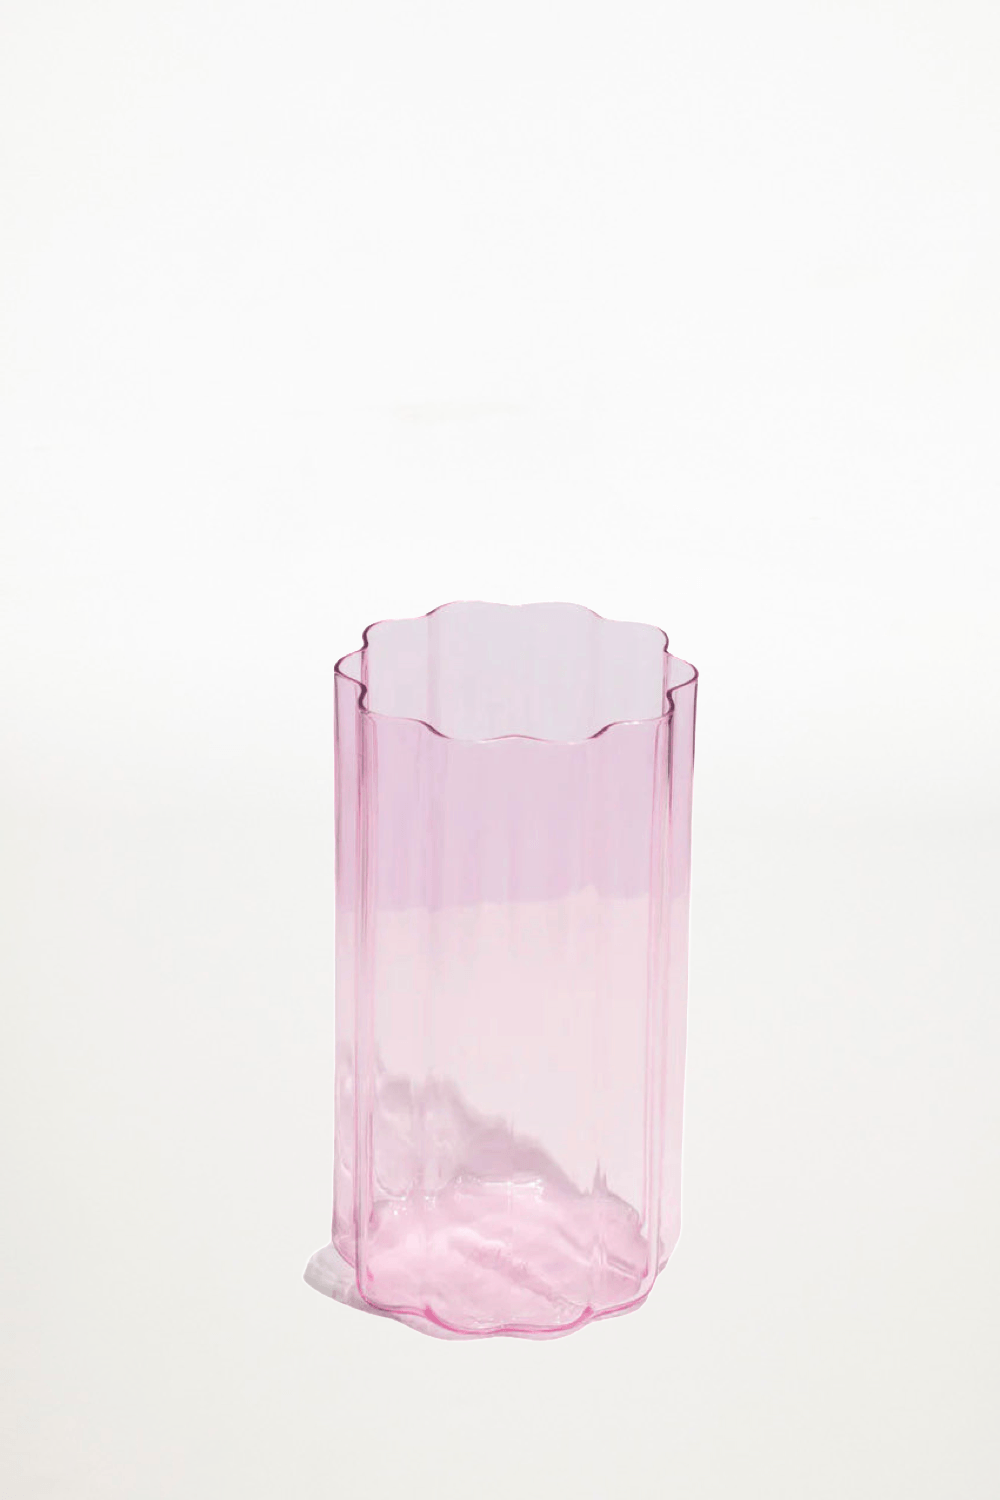 Fazeek - Wave Vase - Pink - Ensemble Studios